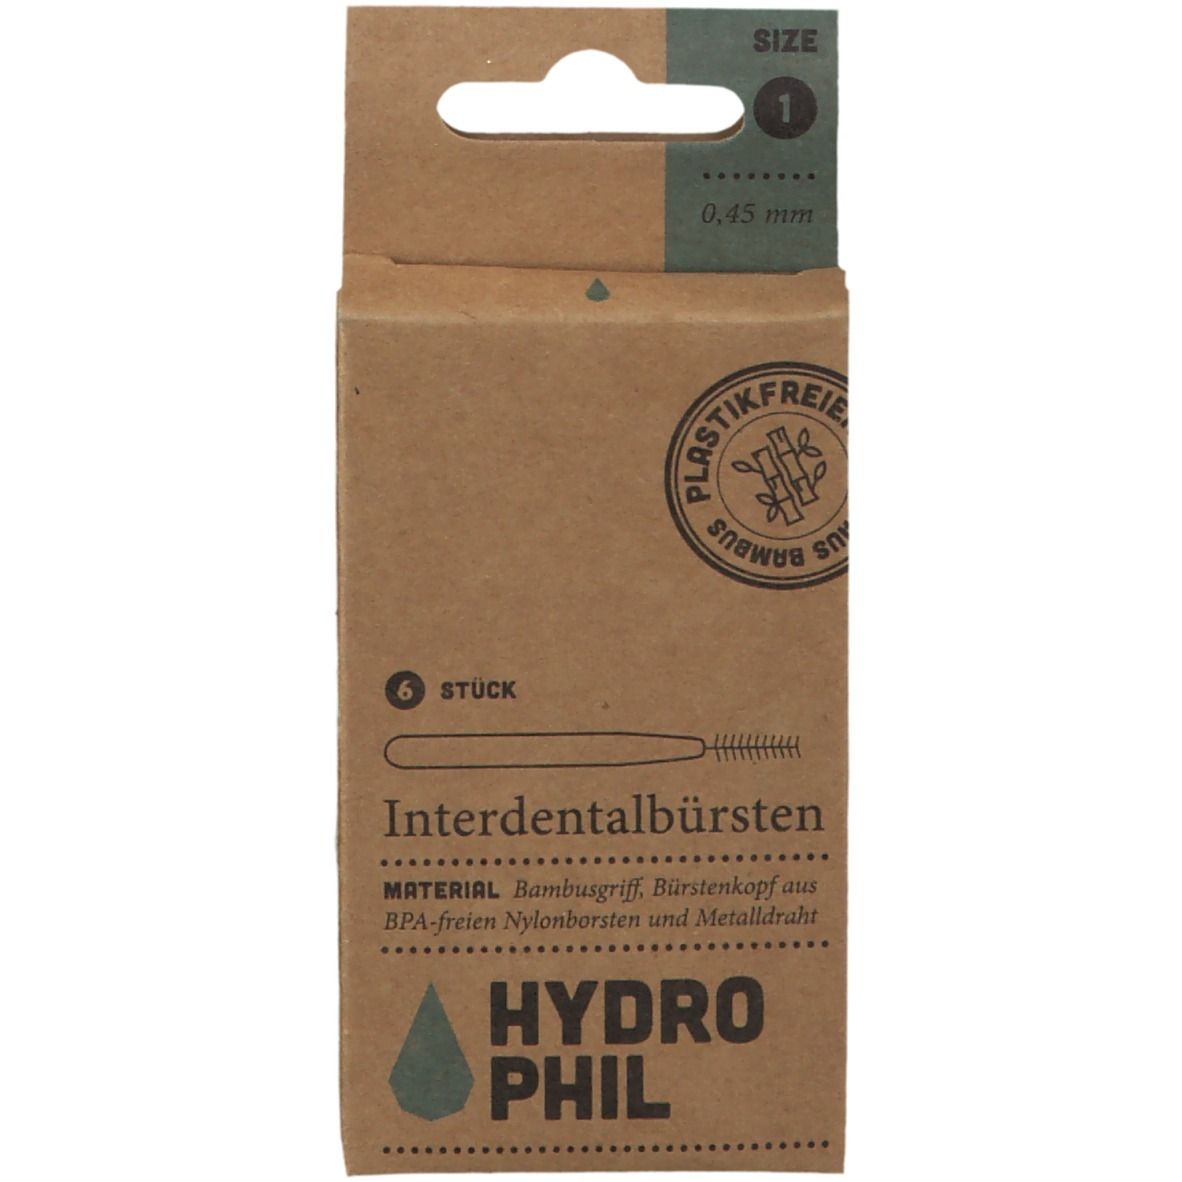 HYDROPHIL Interdentalbürste 0,45 mm